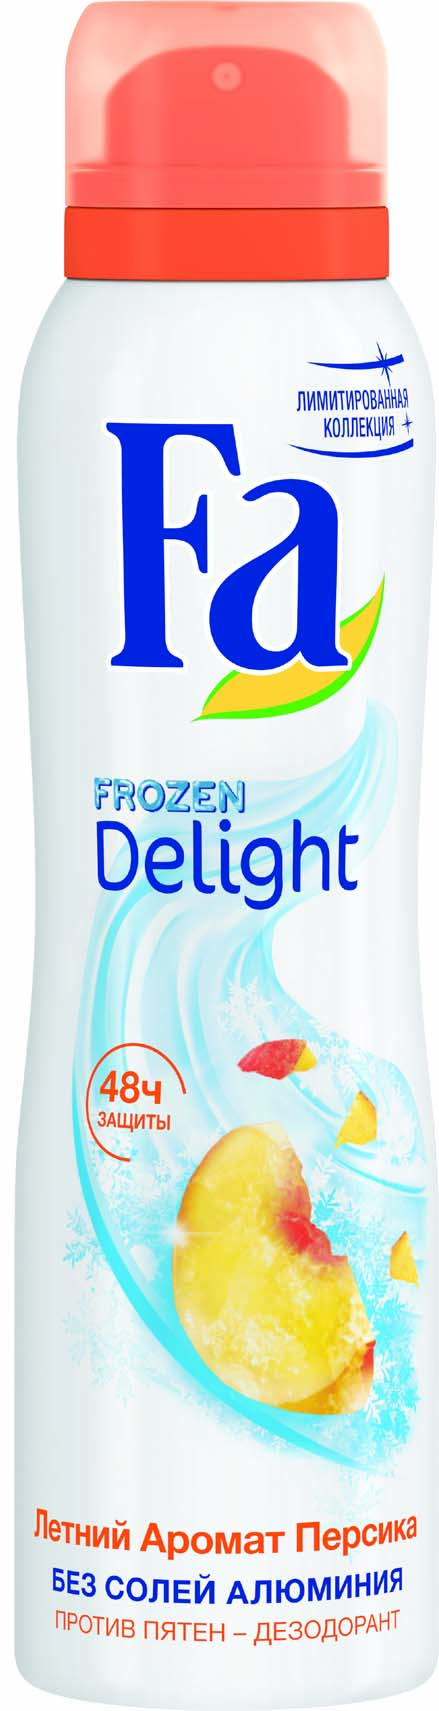 Дезодорант фа персик в 2000. Крем-гель для душа fa Frozen yoghurt белый персик. Дав дезодорант женский спрей персик. Гель для душа fa с дезодорирующим эффектом в 2017 году.